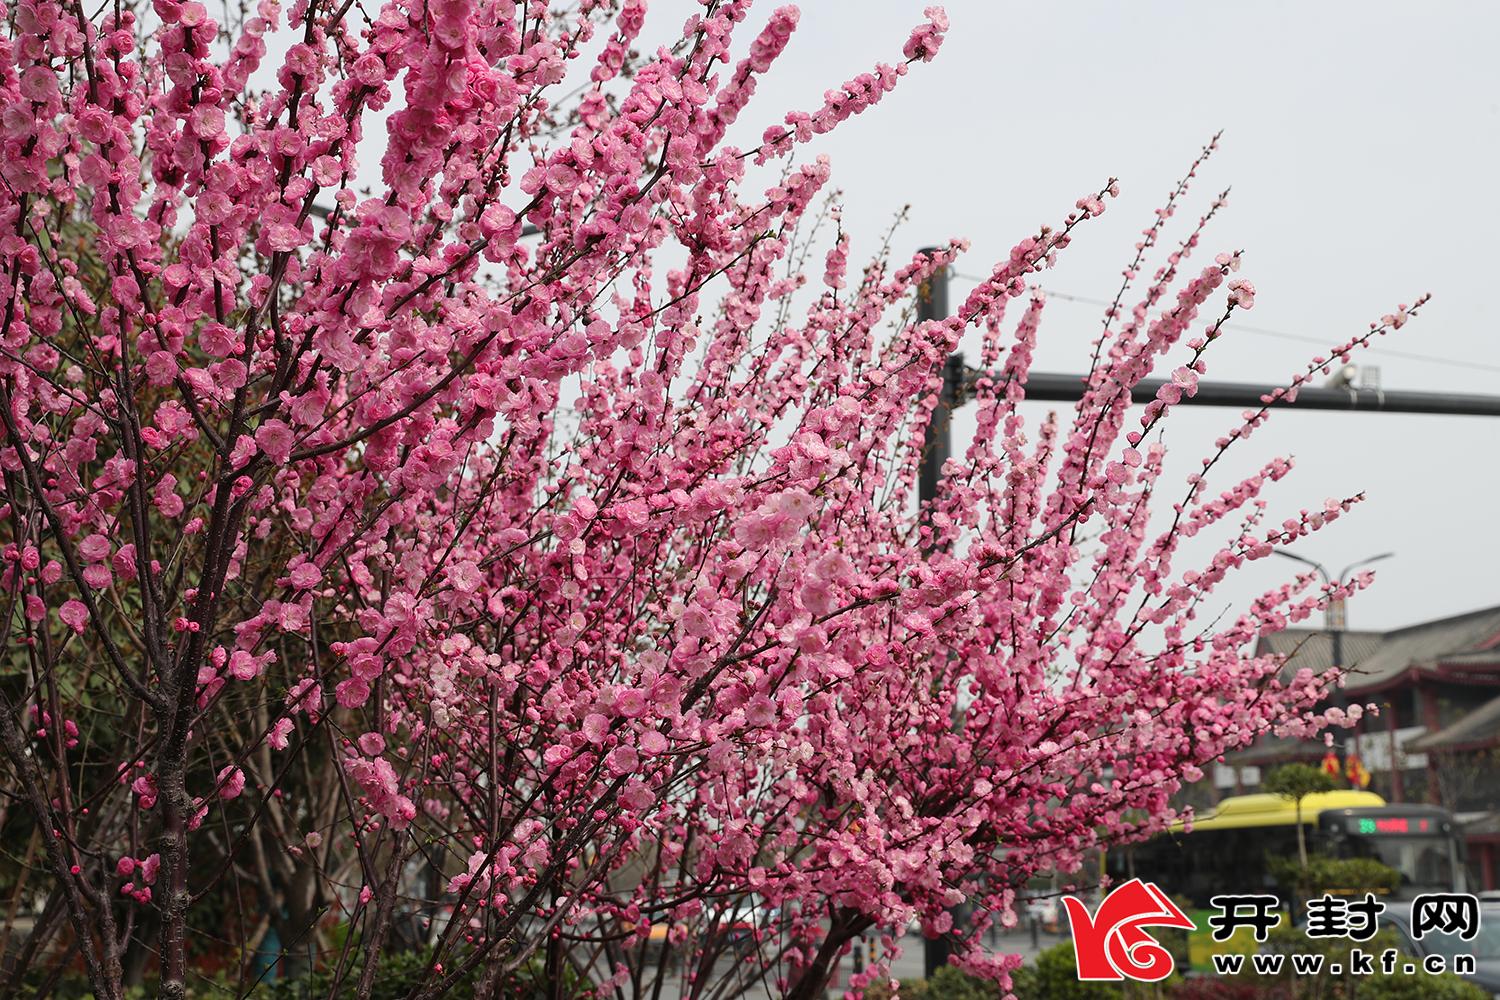 春风和煦，我市处处花团锦簇，姹紫嫣红，一派春意盎然的景象。全媒体记者 李克君3月31日摄